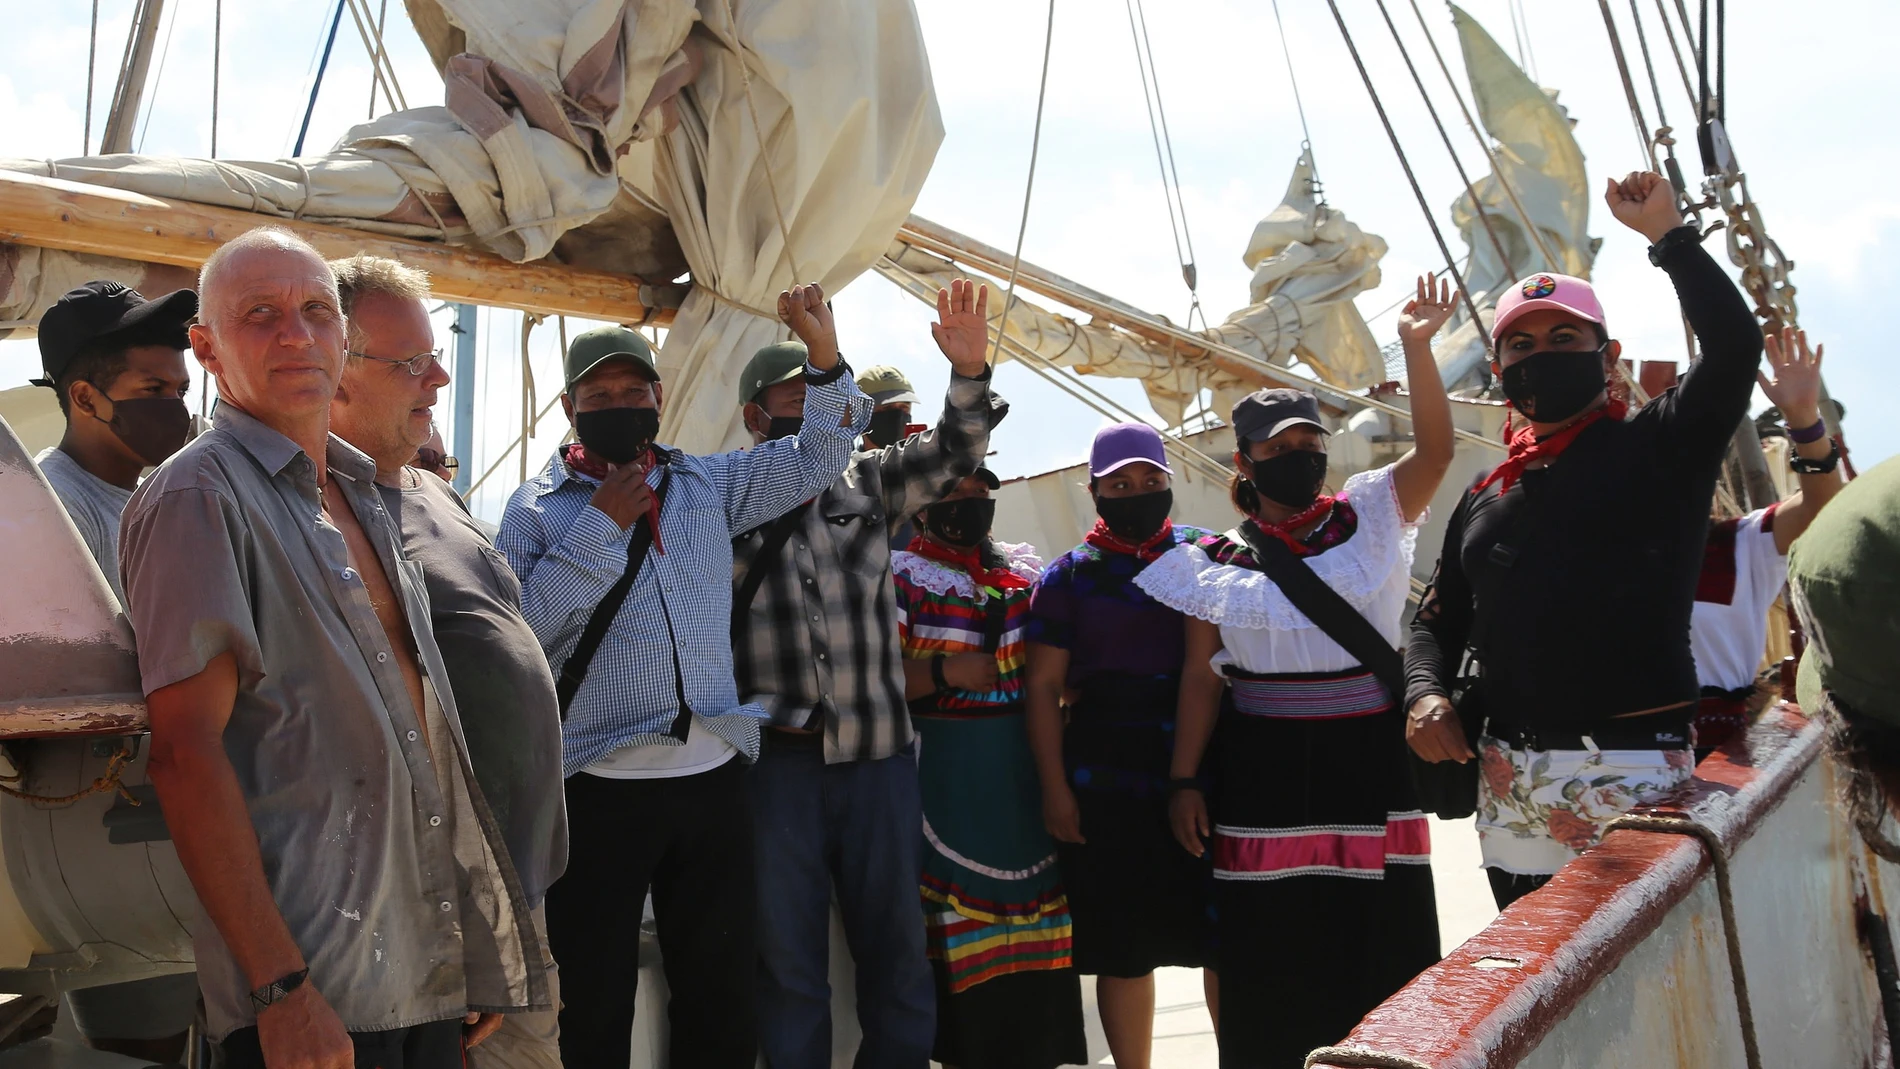 Tripulación del barco y miembros del Ejercito Zapatista de Liberación Nacional (EZLN) se despiden hoy al salir rumbo a Europa desde Isla Mujeres